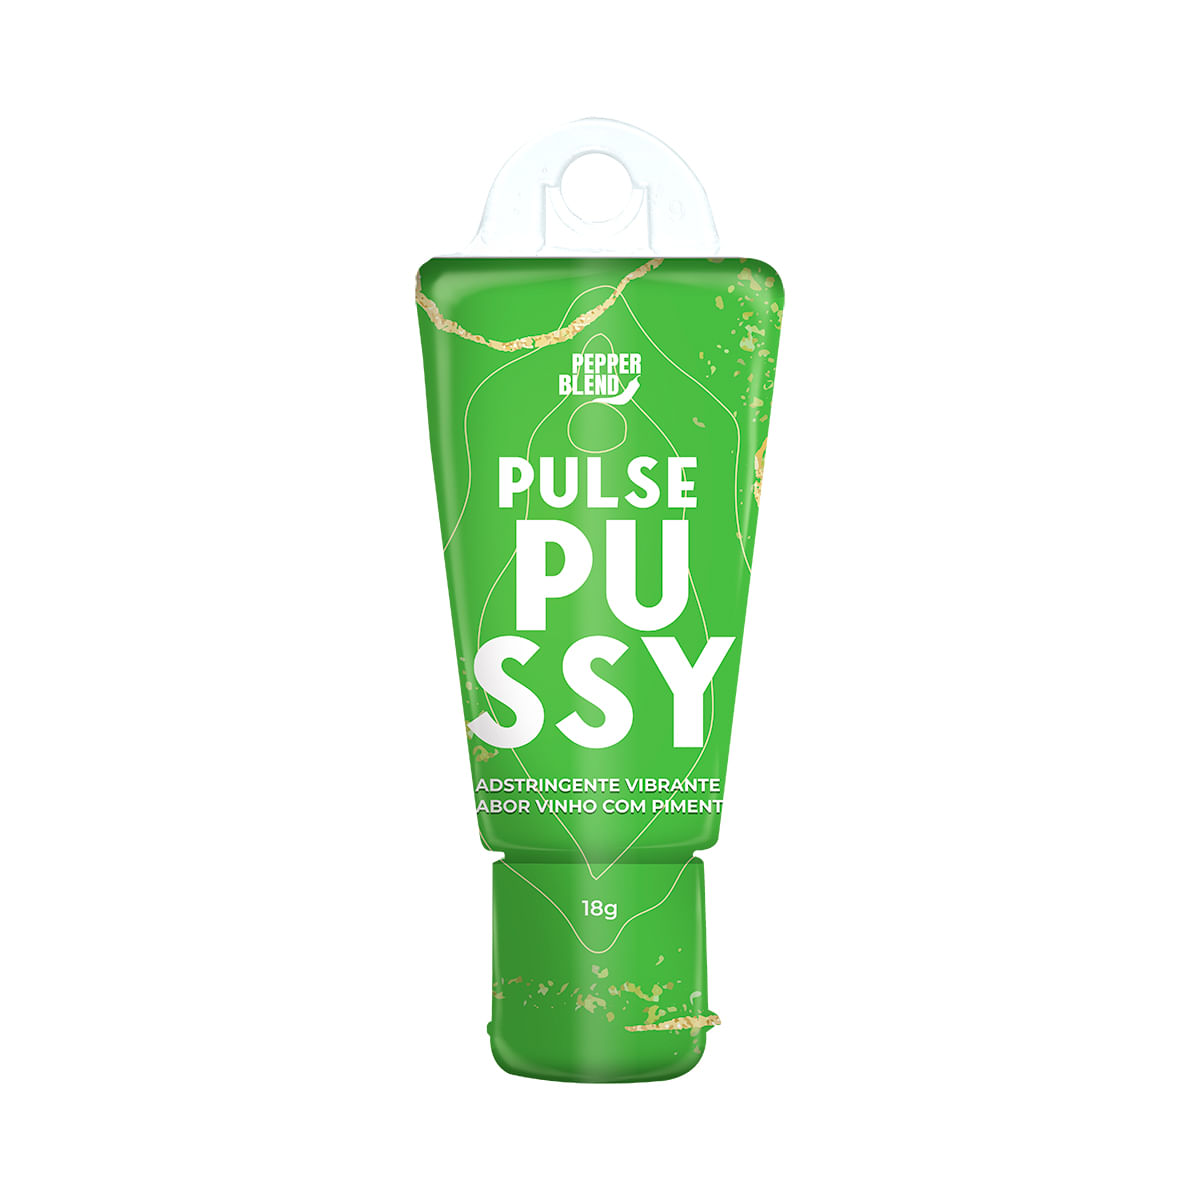 Pulse Pussy Gel Adstringente Vibrante 18g Pepper Blend